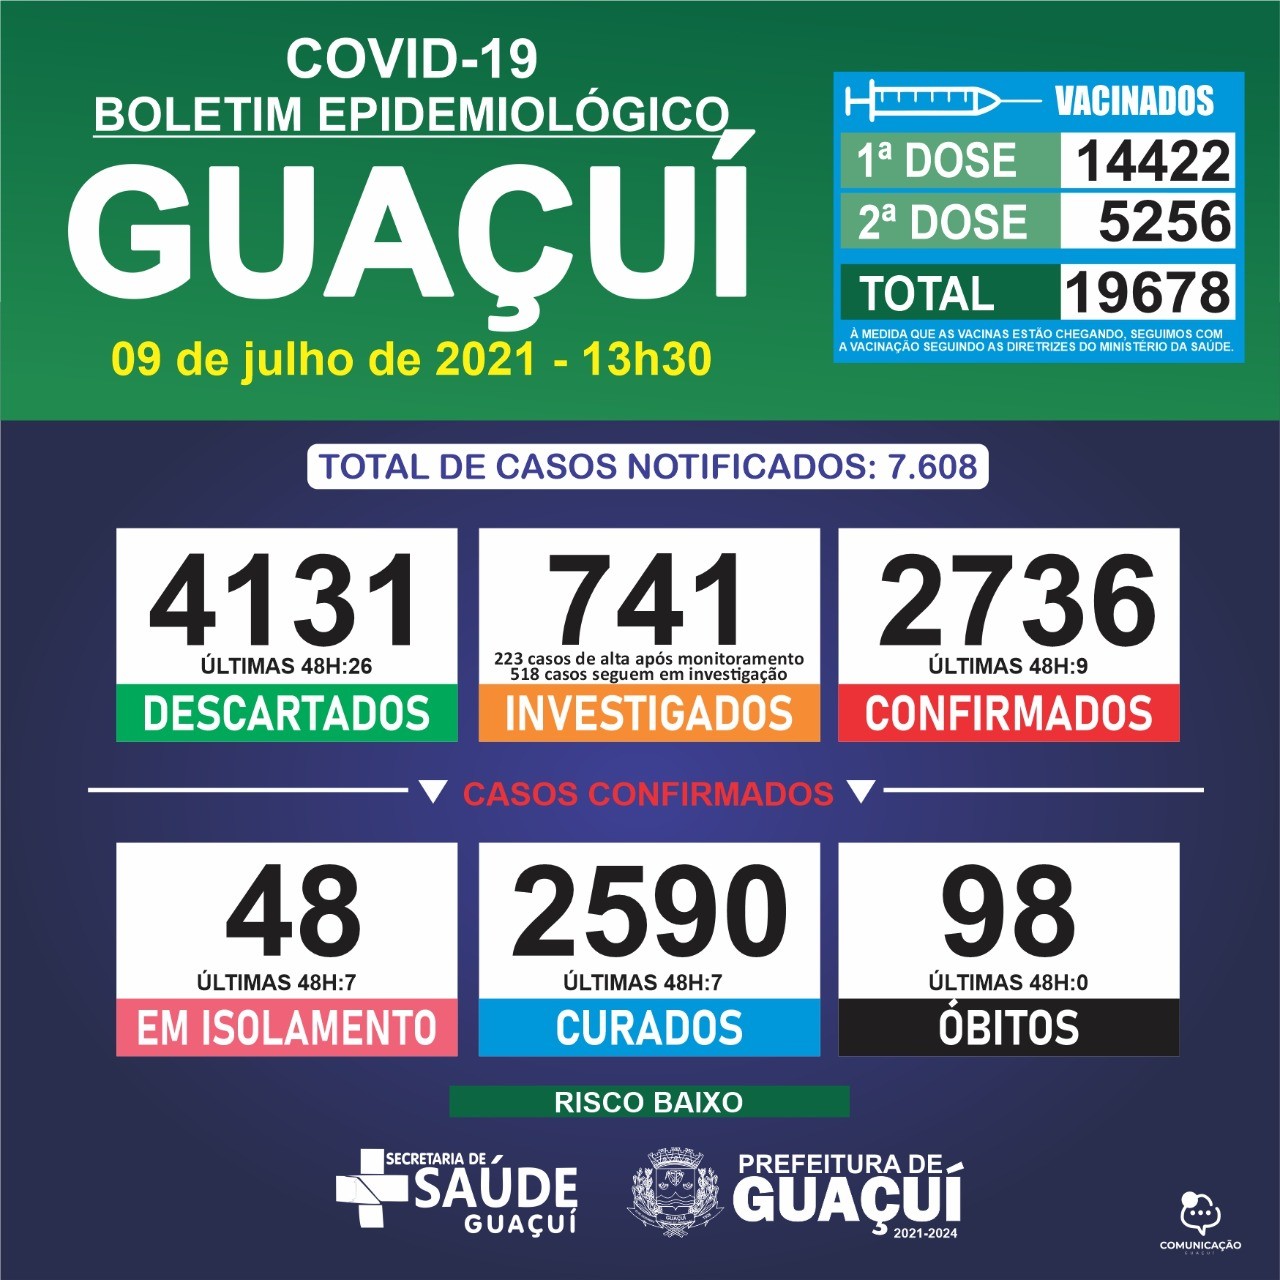 Boletim Epidemiológico 09/07/21: Guaçuí registra 9 casos confirmados e 7 curados nas últimas 48 horas